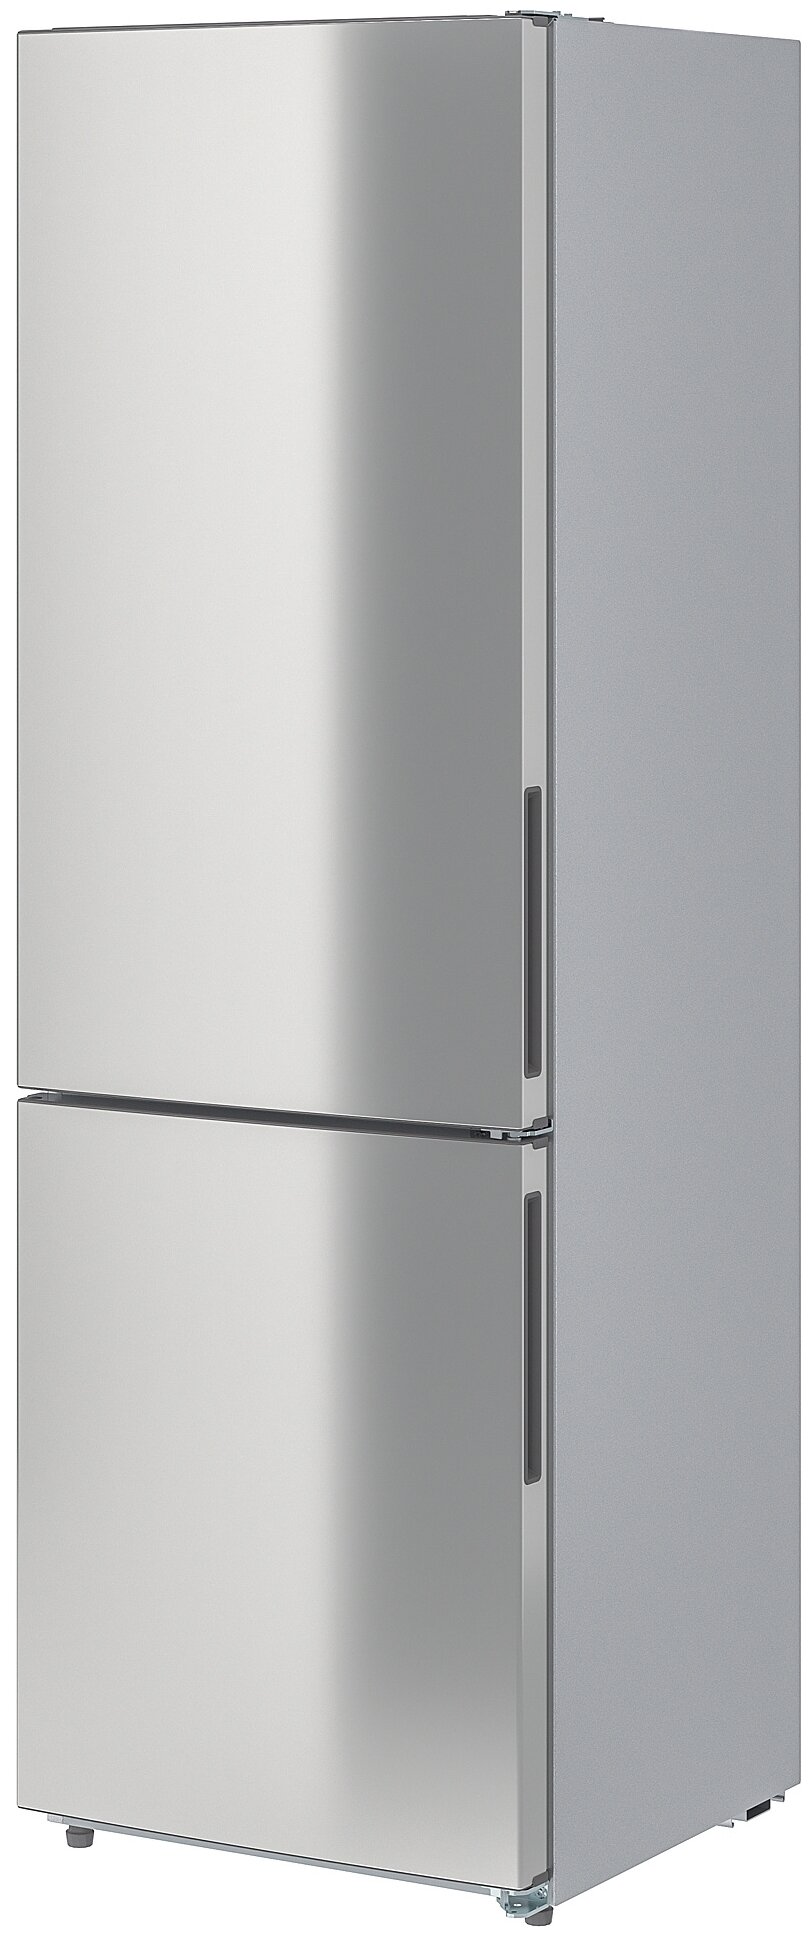 MEDGÅNG медгонг холодильник/ морозильник 219/76 л икеа 500 отдельно стоящий/нержавеющая сталь